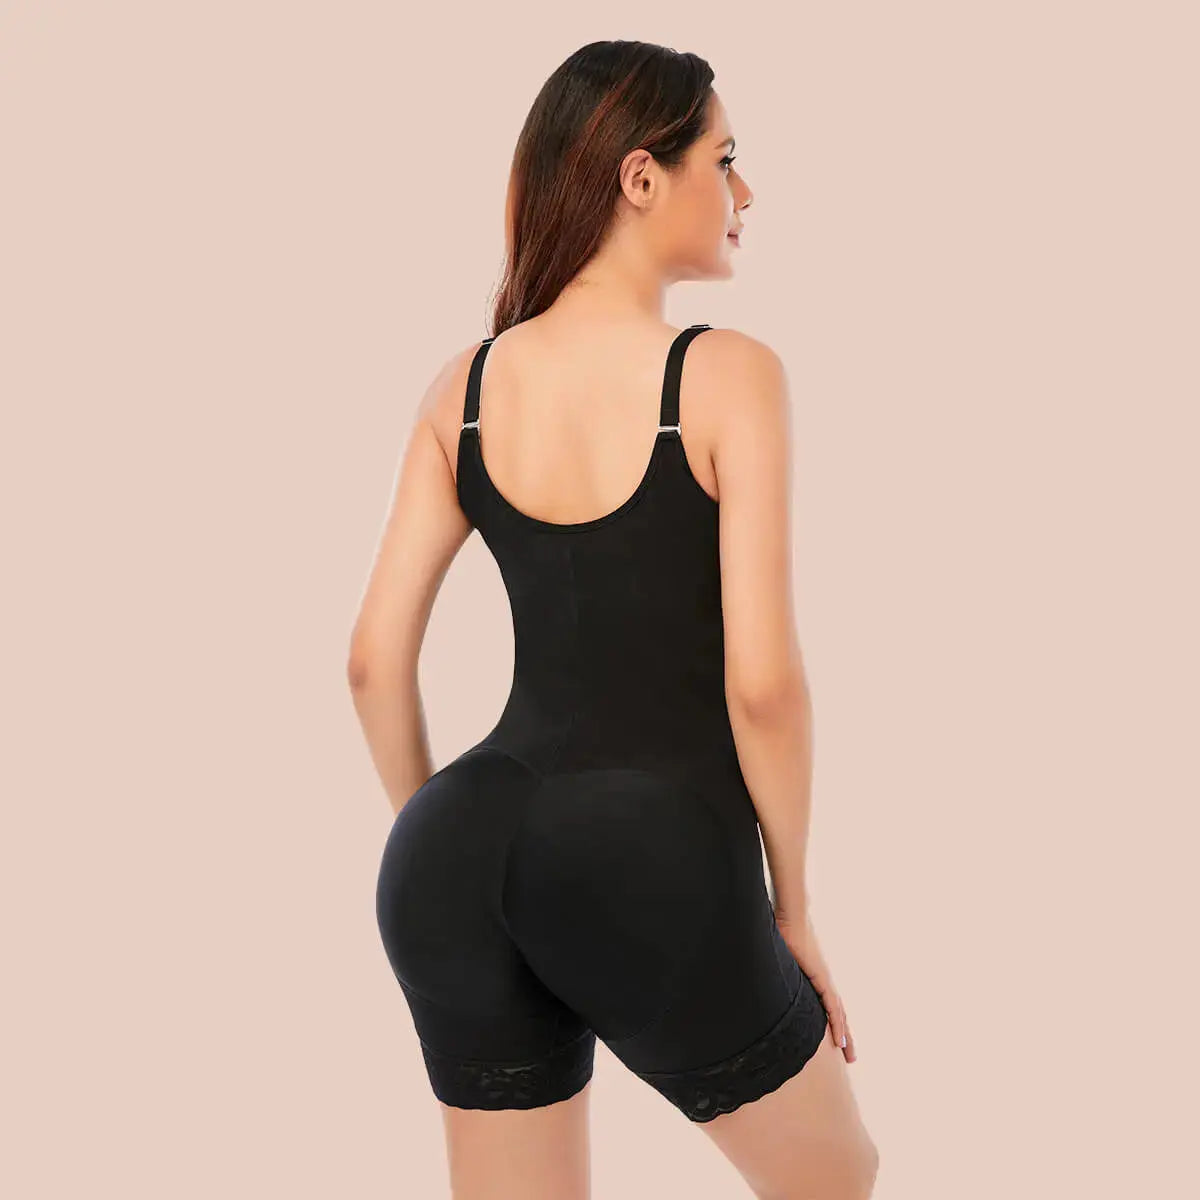 SHAPERX Tummy Control Fajas Colombianas For Women Butt Lifter